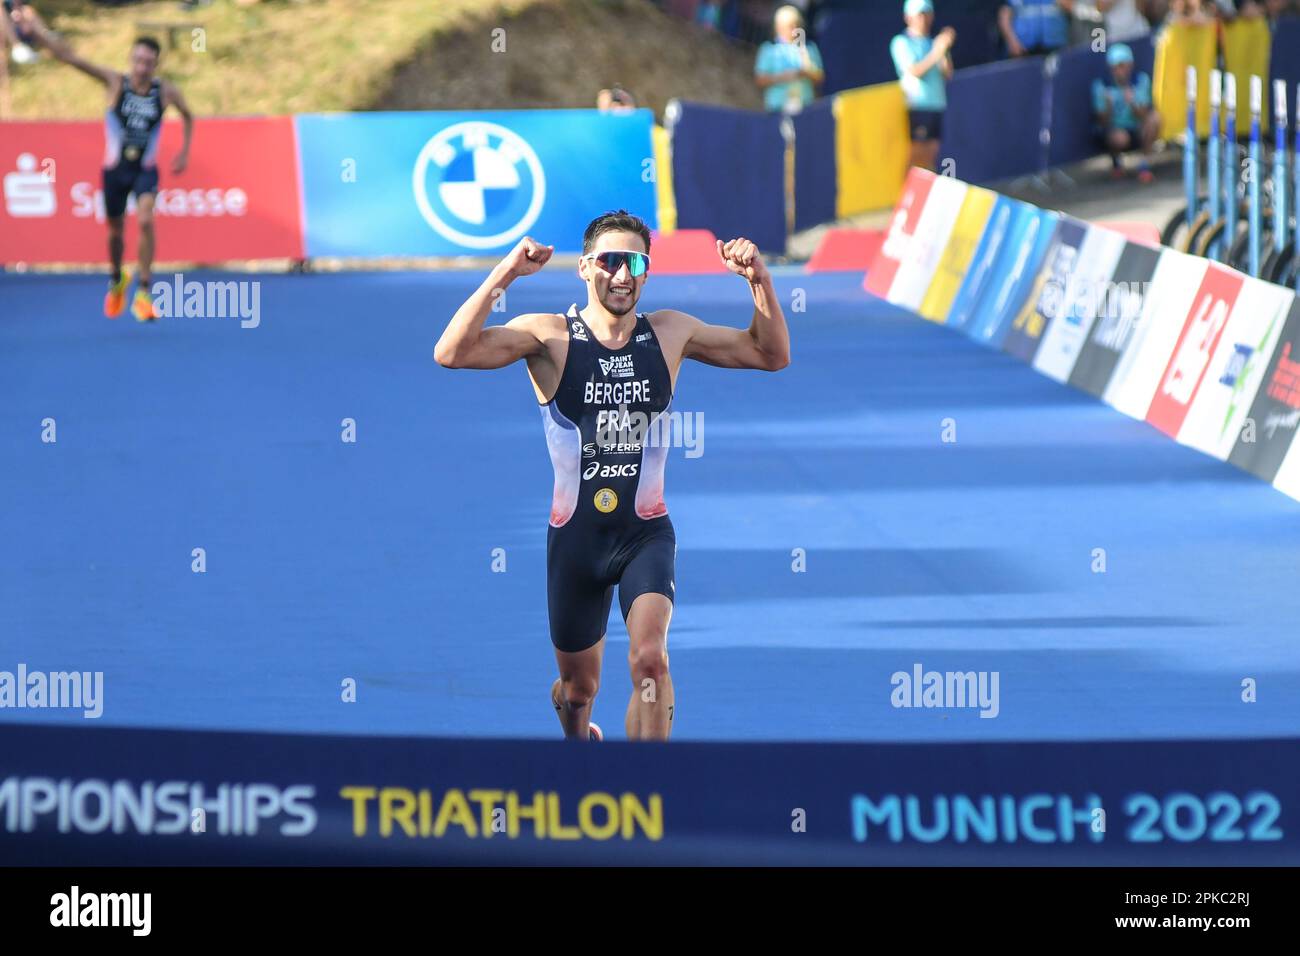 Leo Bergere (Francia, Medaglia d'oro), Triathlon uomini. Campionato europeo di Monaco 2022 Foto Stock